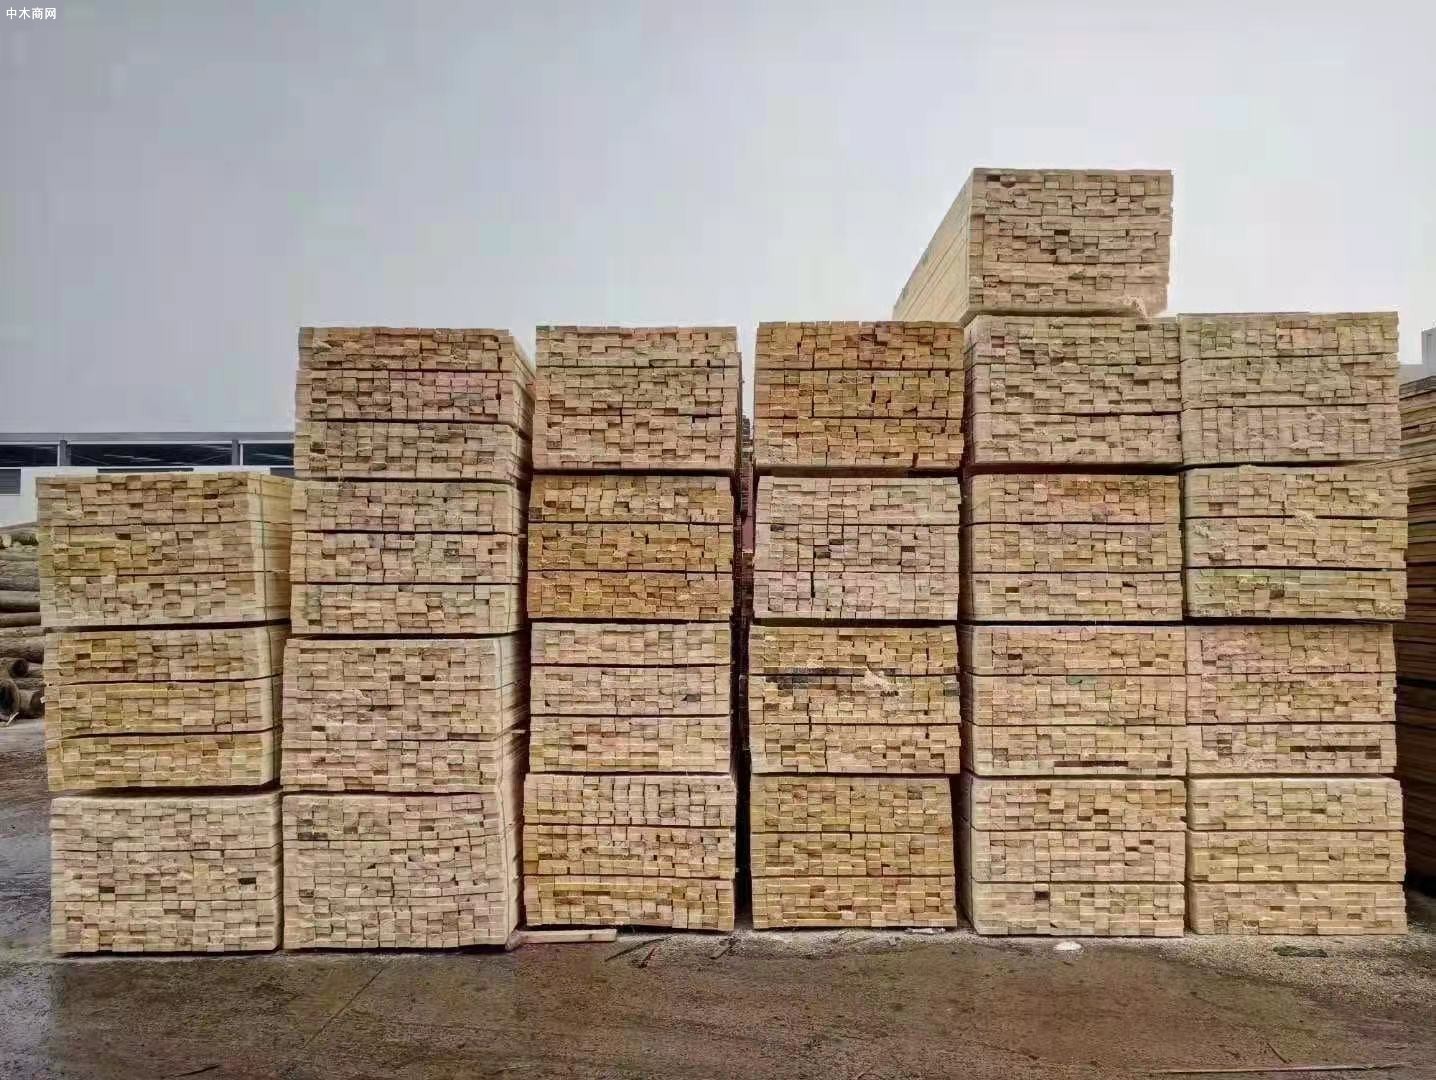 江苏沭阳县长调研木材加工产业发展情况